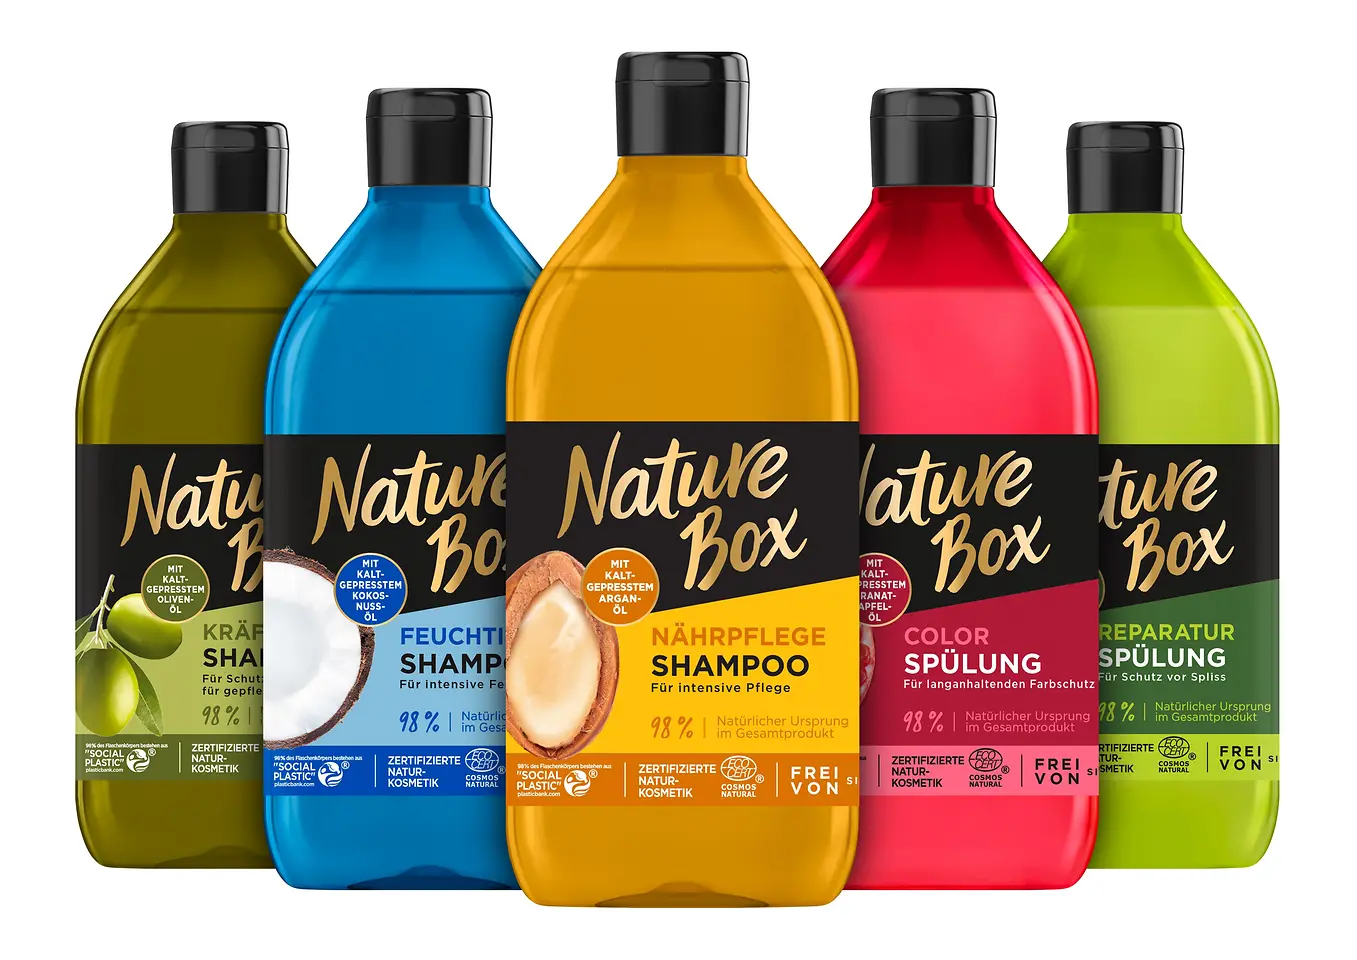 Fünf bunte Flaschen von Nature Box stehen nebeneinander.